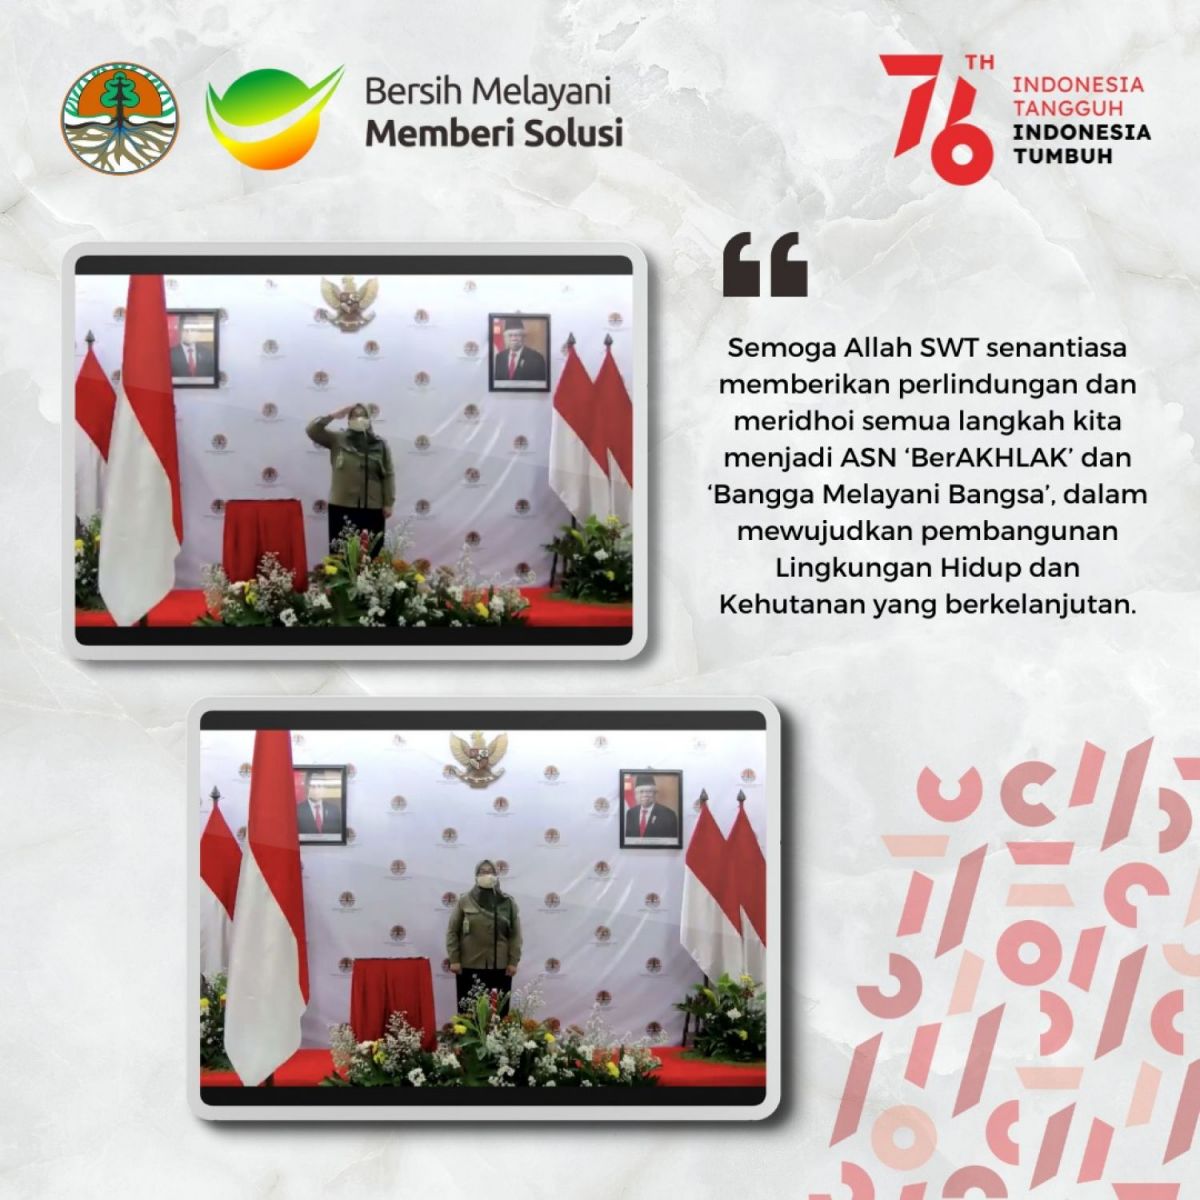 bangga sebagai bangsa indonesia dapat diimplementasikan dengan cara